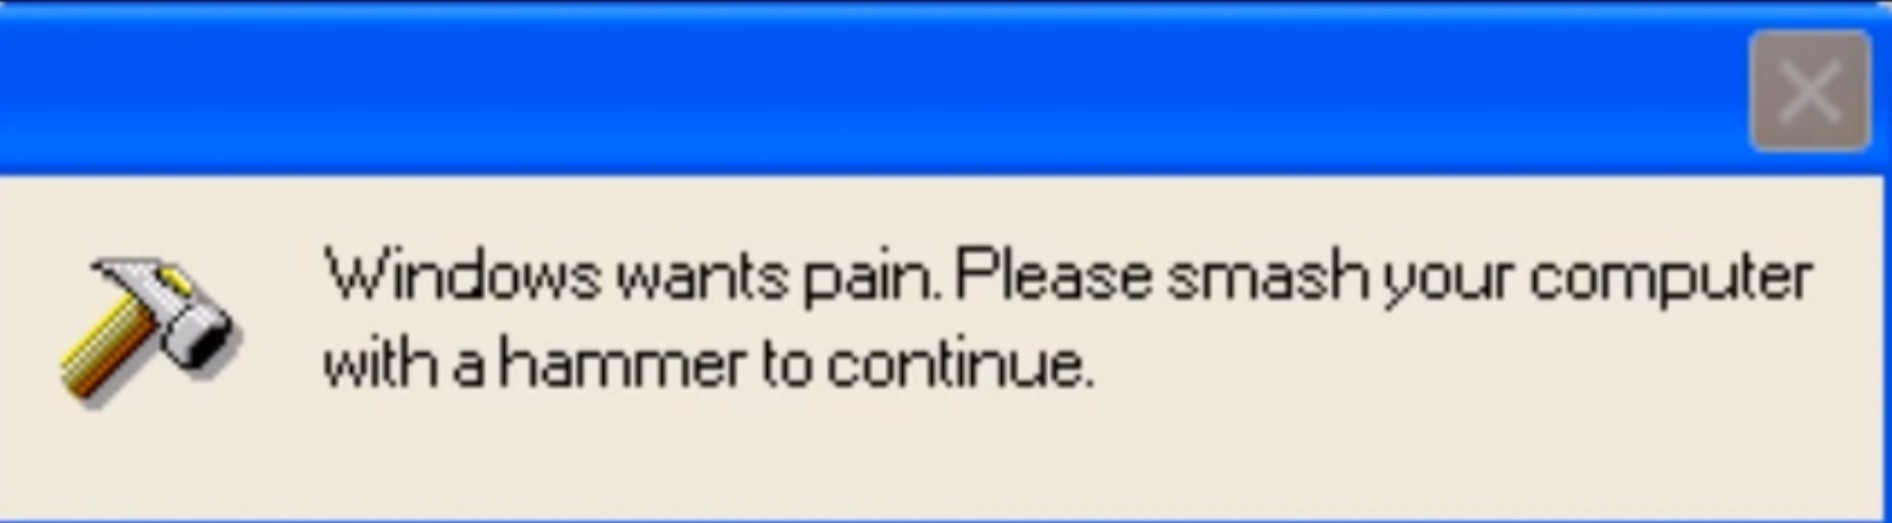 Windows want pain - meme